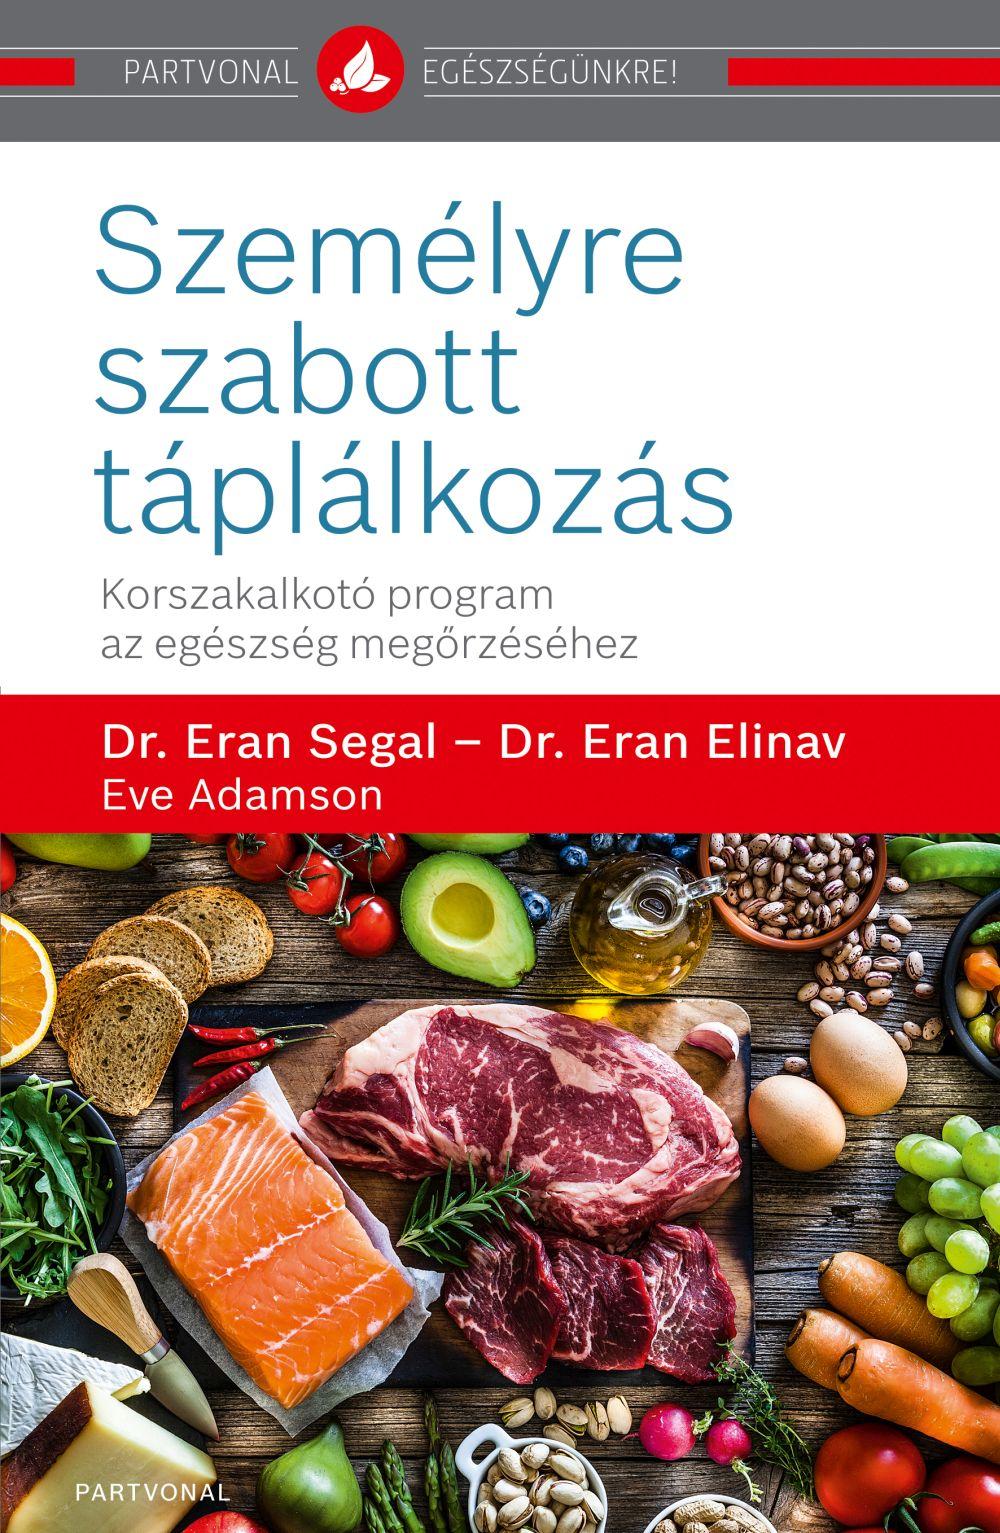 Dr. Eran Segal - Dr. Eran Elinav - Eve Adamson - Személyre szabott táplálkozás - Korszakalkotó program az egészség megőrzéséhez